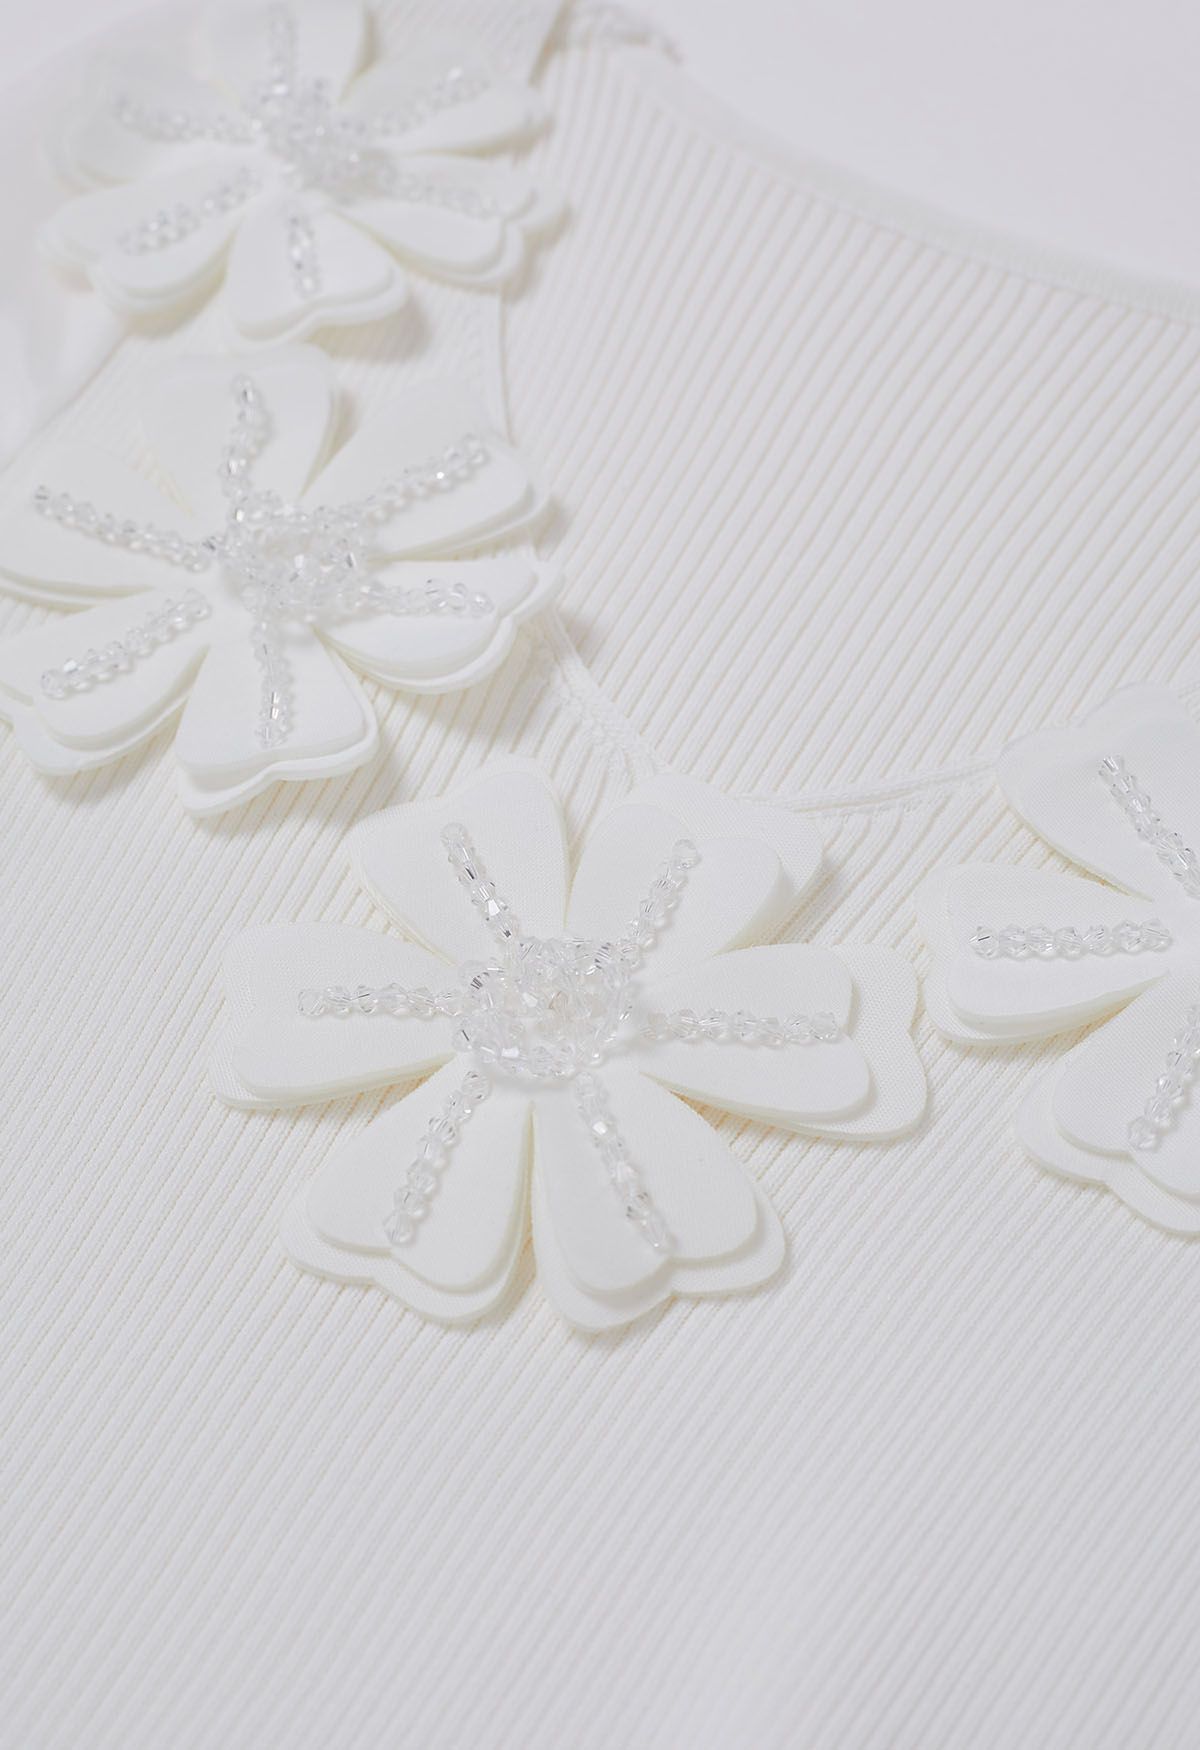 Beaded Flower V-Neck Bubble Sleeve Spliced Knit Top in White